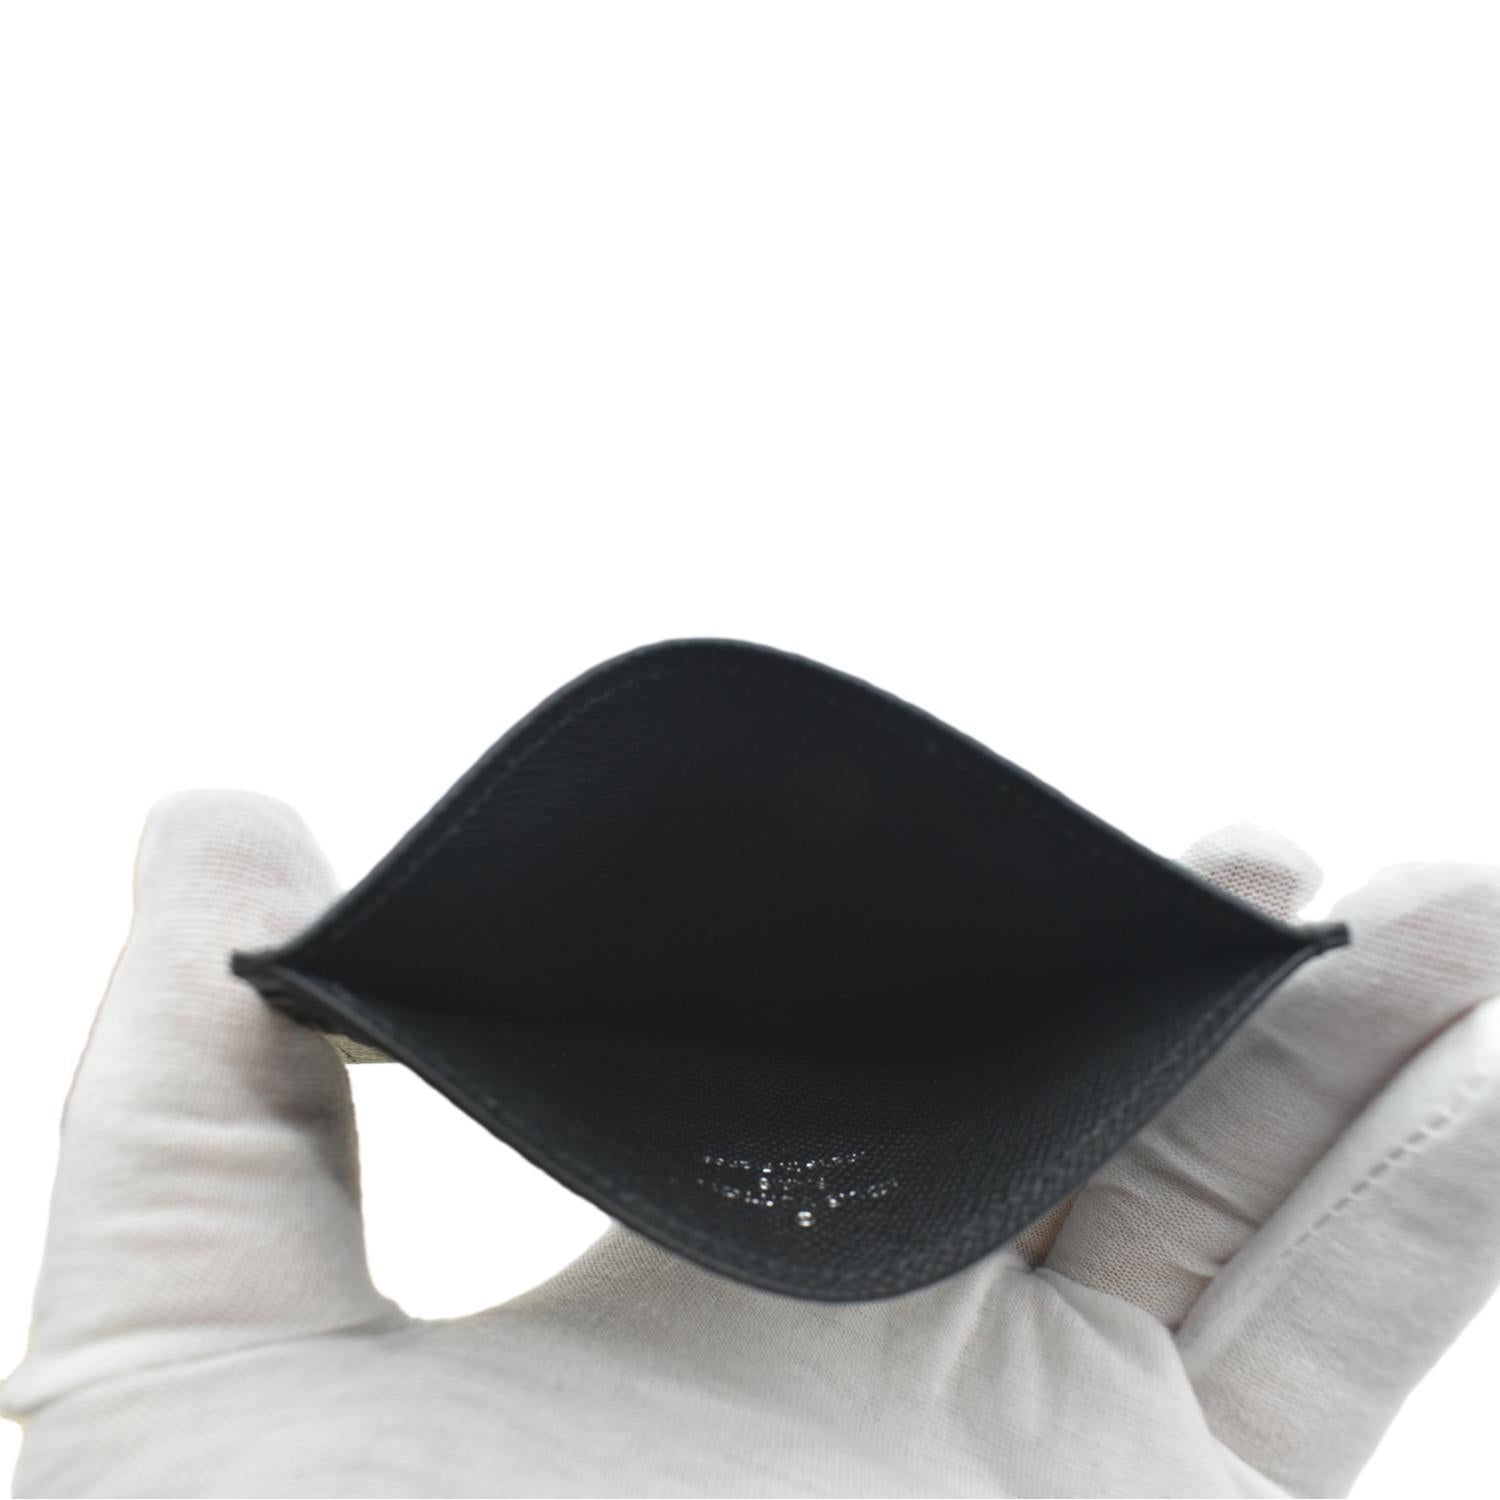 Louis Vuitton My Monogram Eclipse Beanie - Black Hats, Accessories